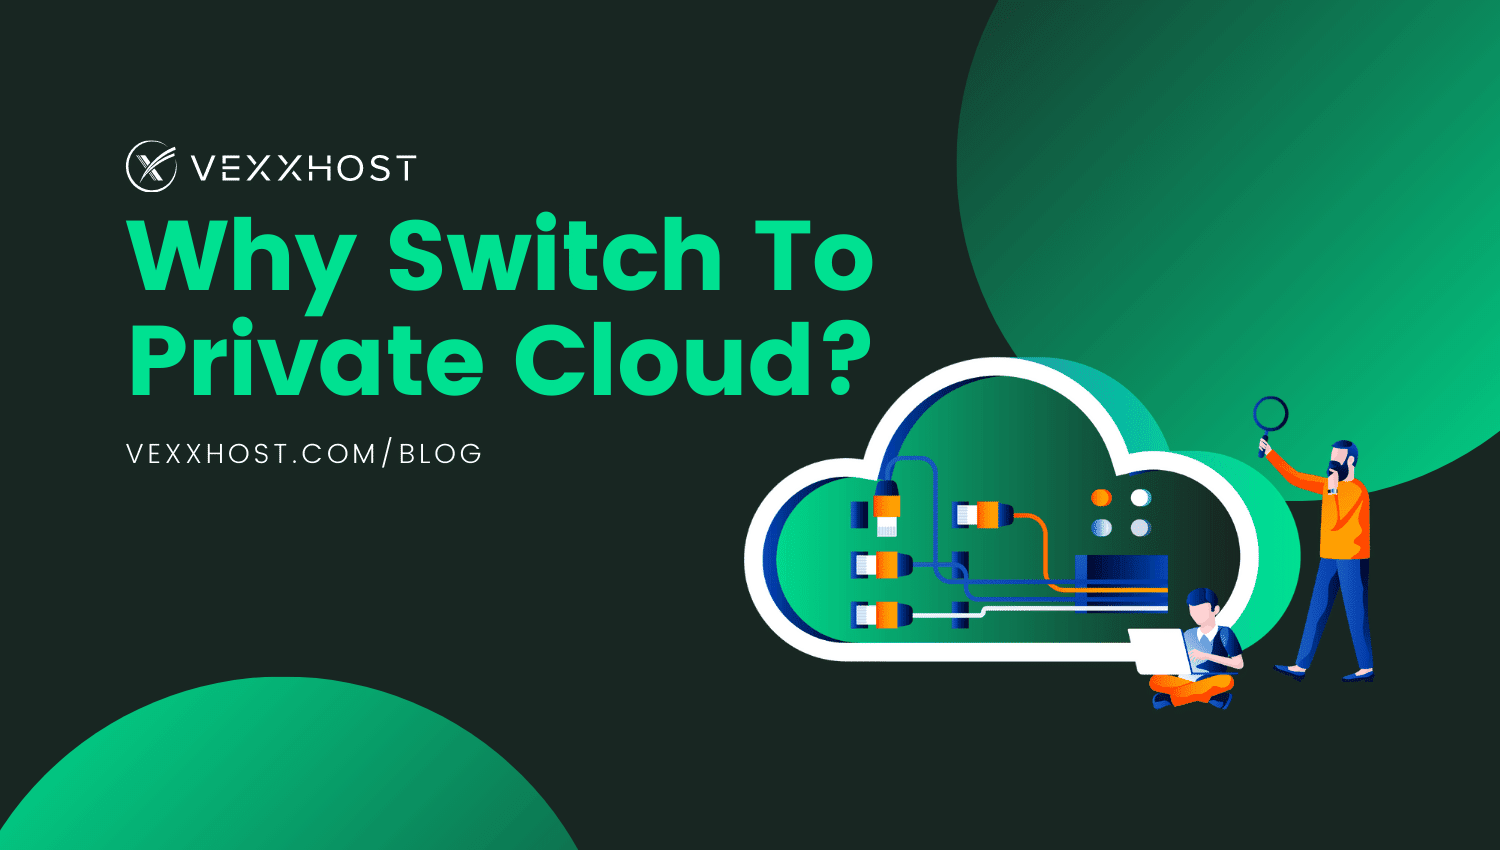 vexxhost private cloud blog header